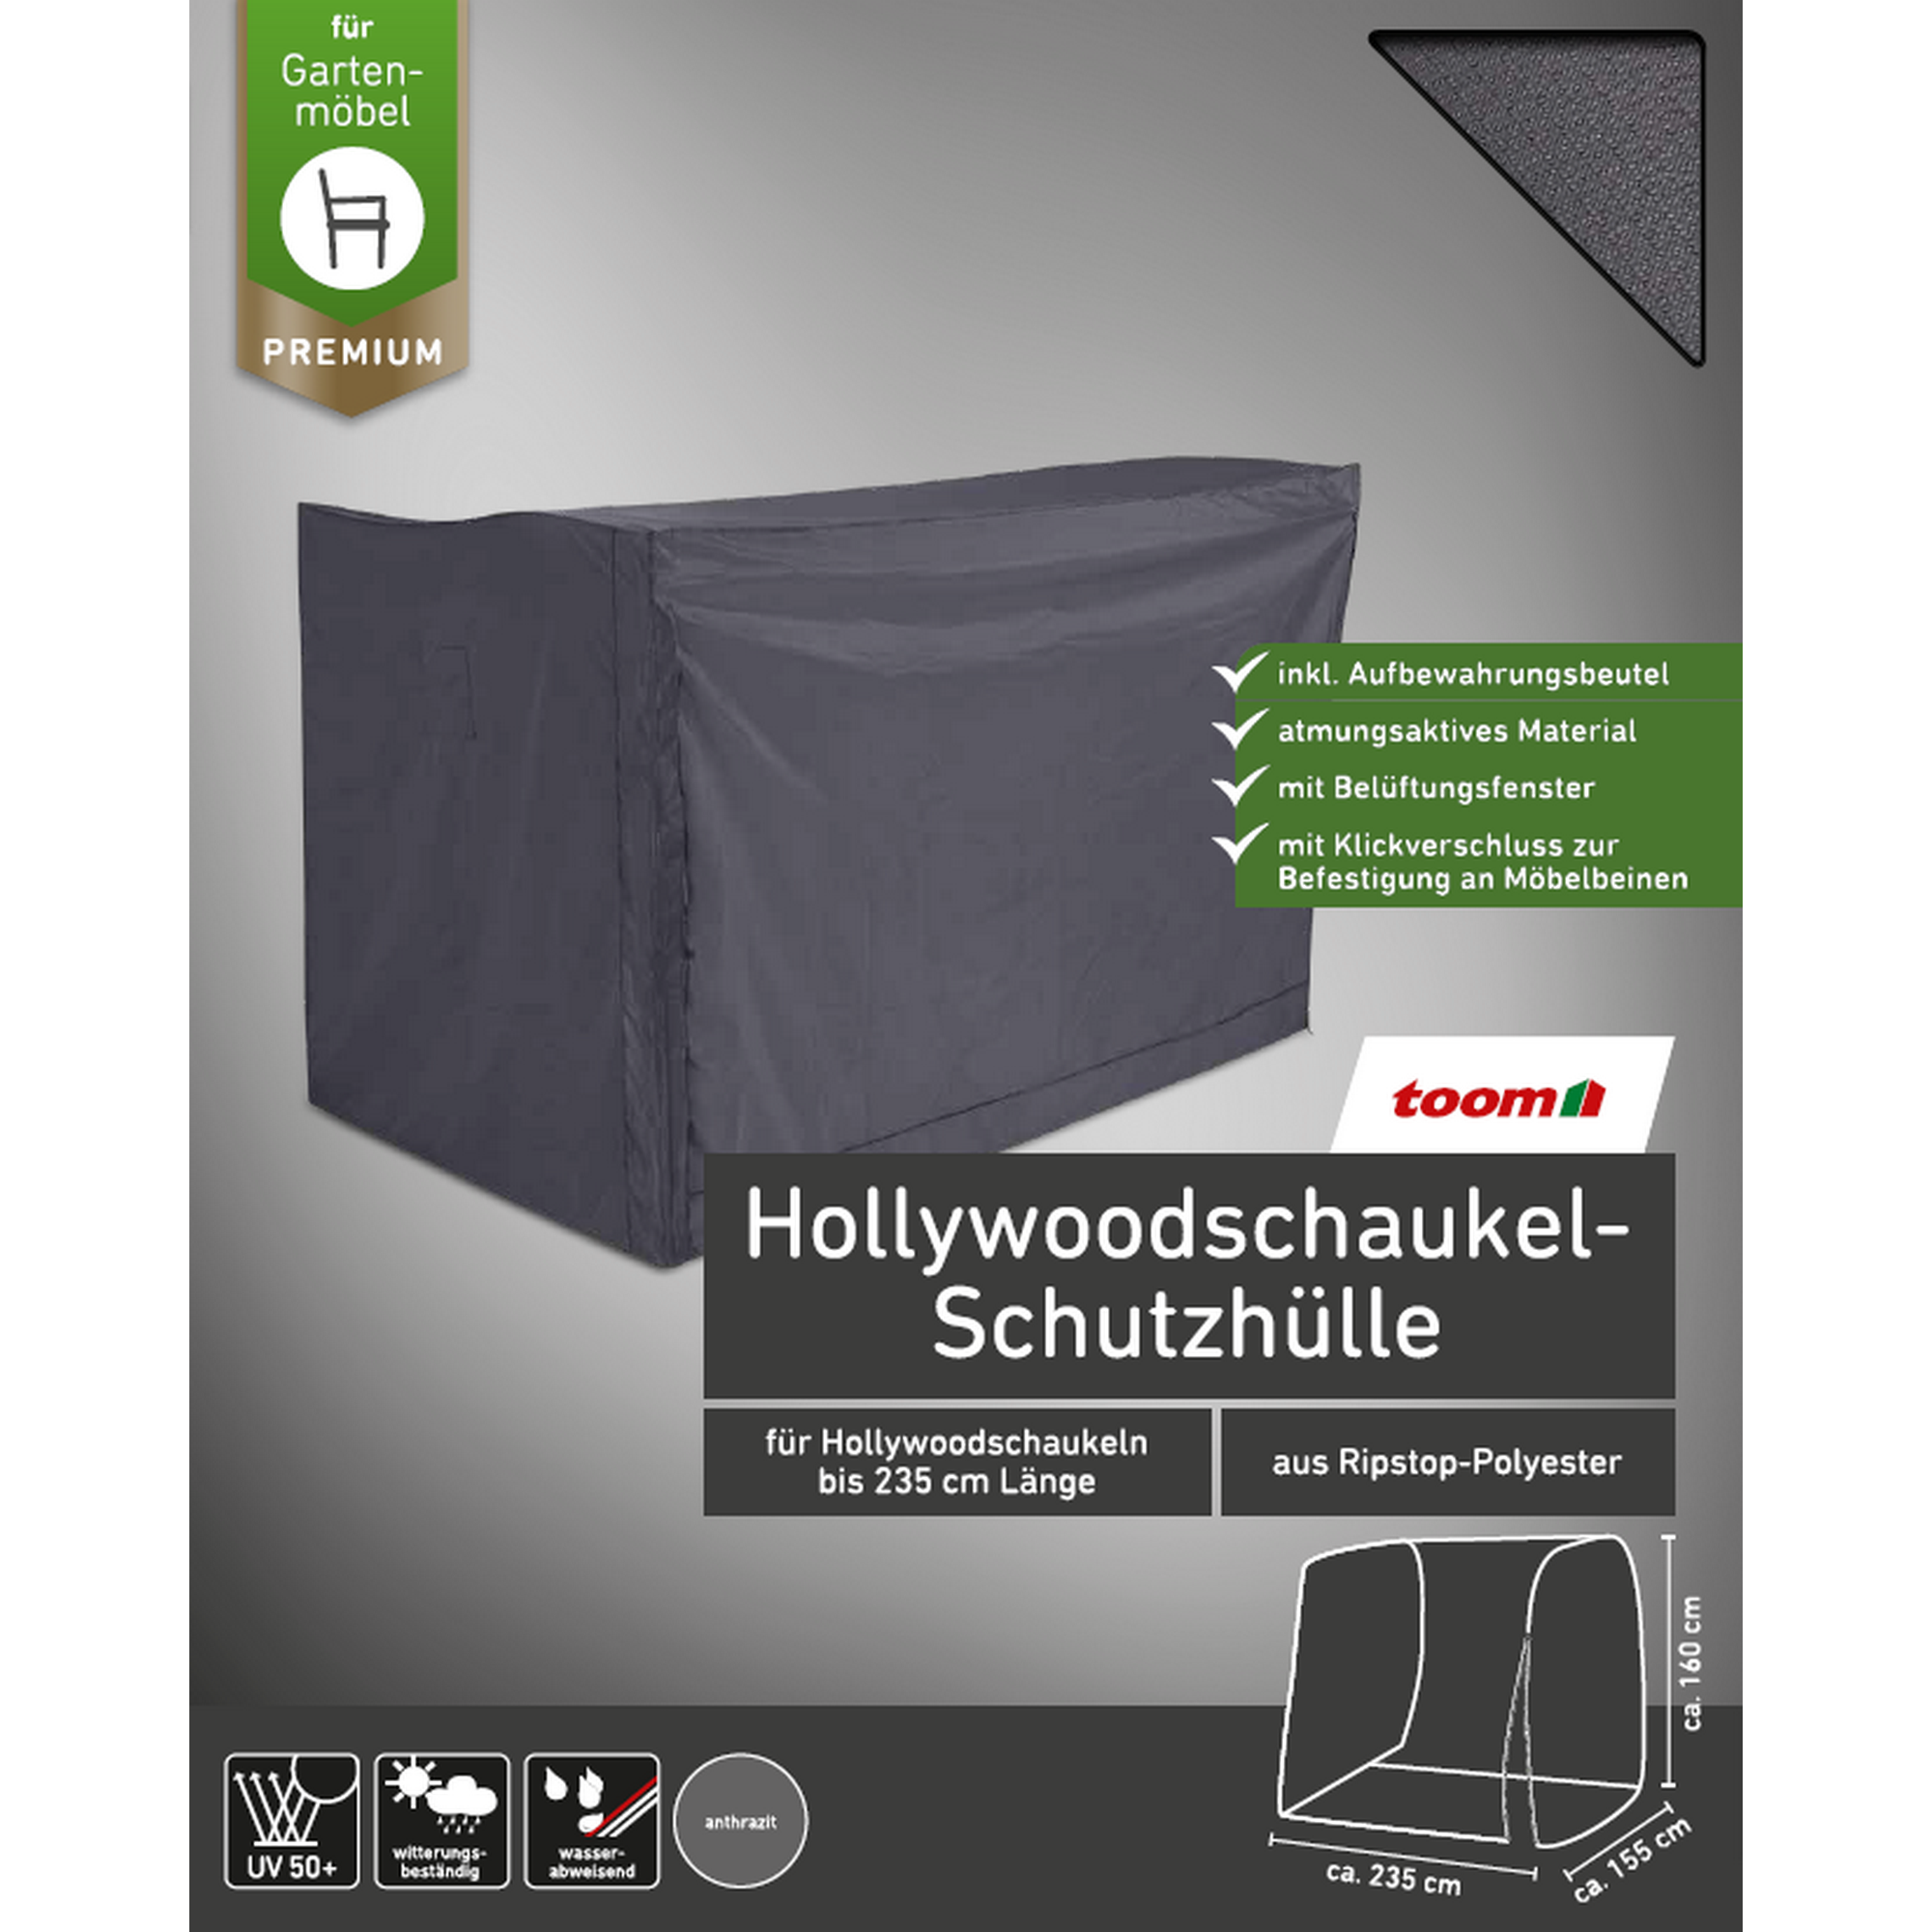 Premium-Schutzhülle für Hollywoodschaukeln bis 235 cm + product picture